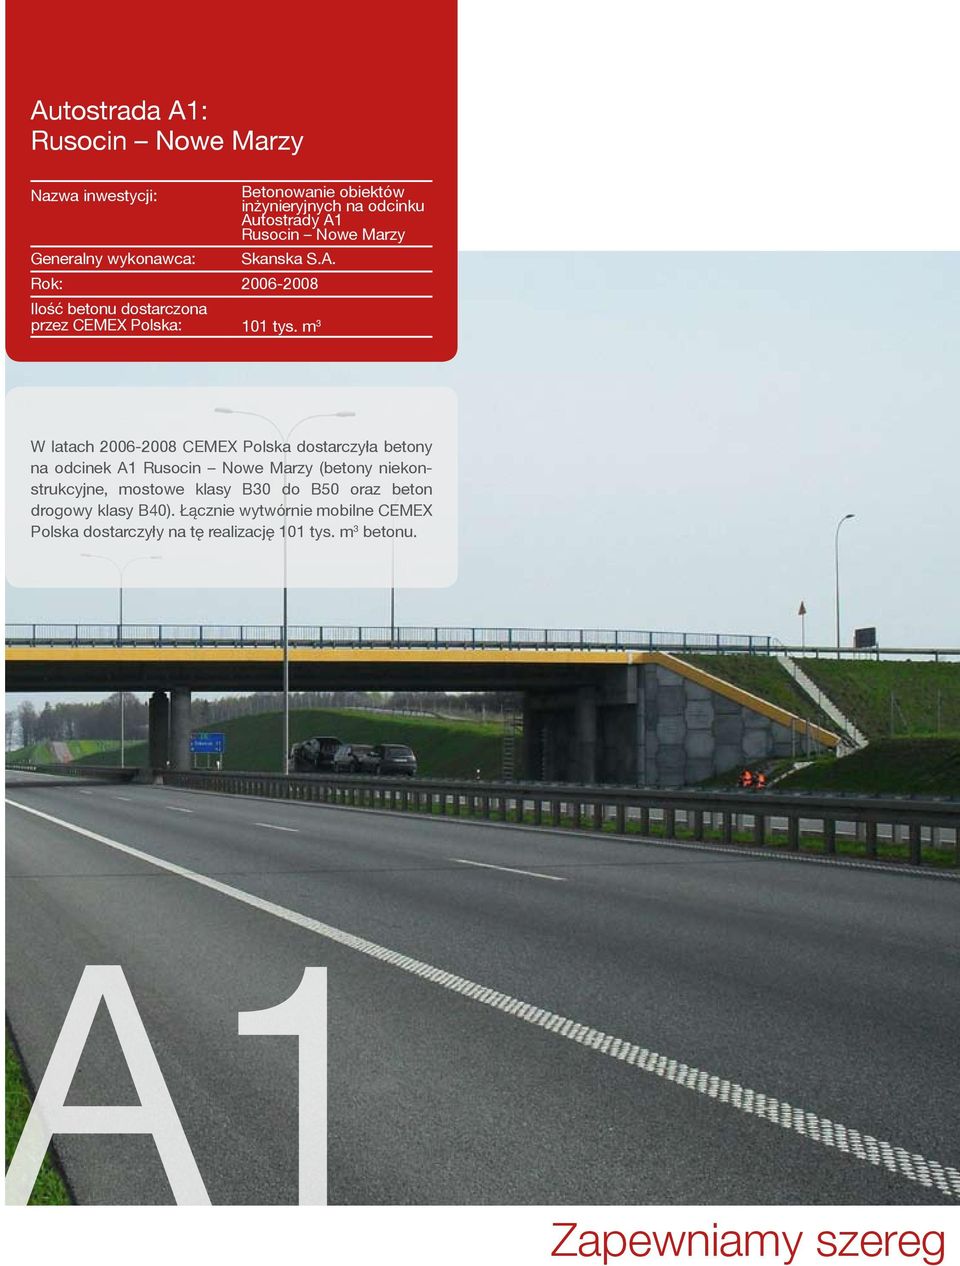 m 3 W latach 2006-2008 CEMEX Polska dostarczyła betony na odcinek A1 Rusocin Nowe Marzy (betony niekonstrukcyjne,